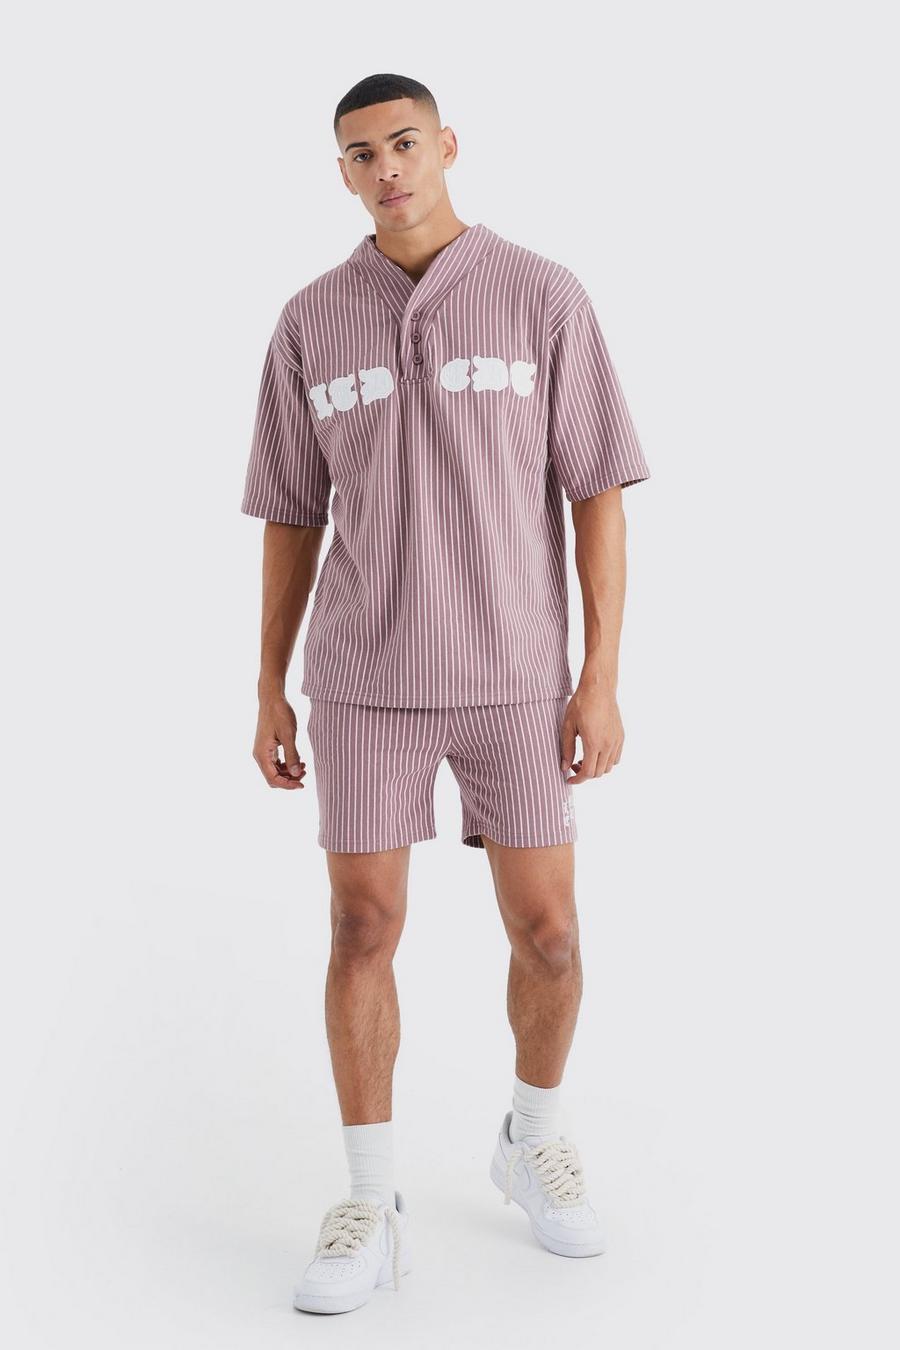 Mauve Oversize randig baseballskjorta och shorts